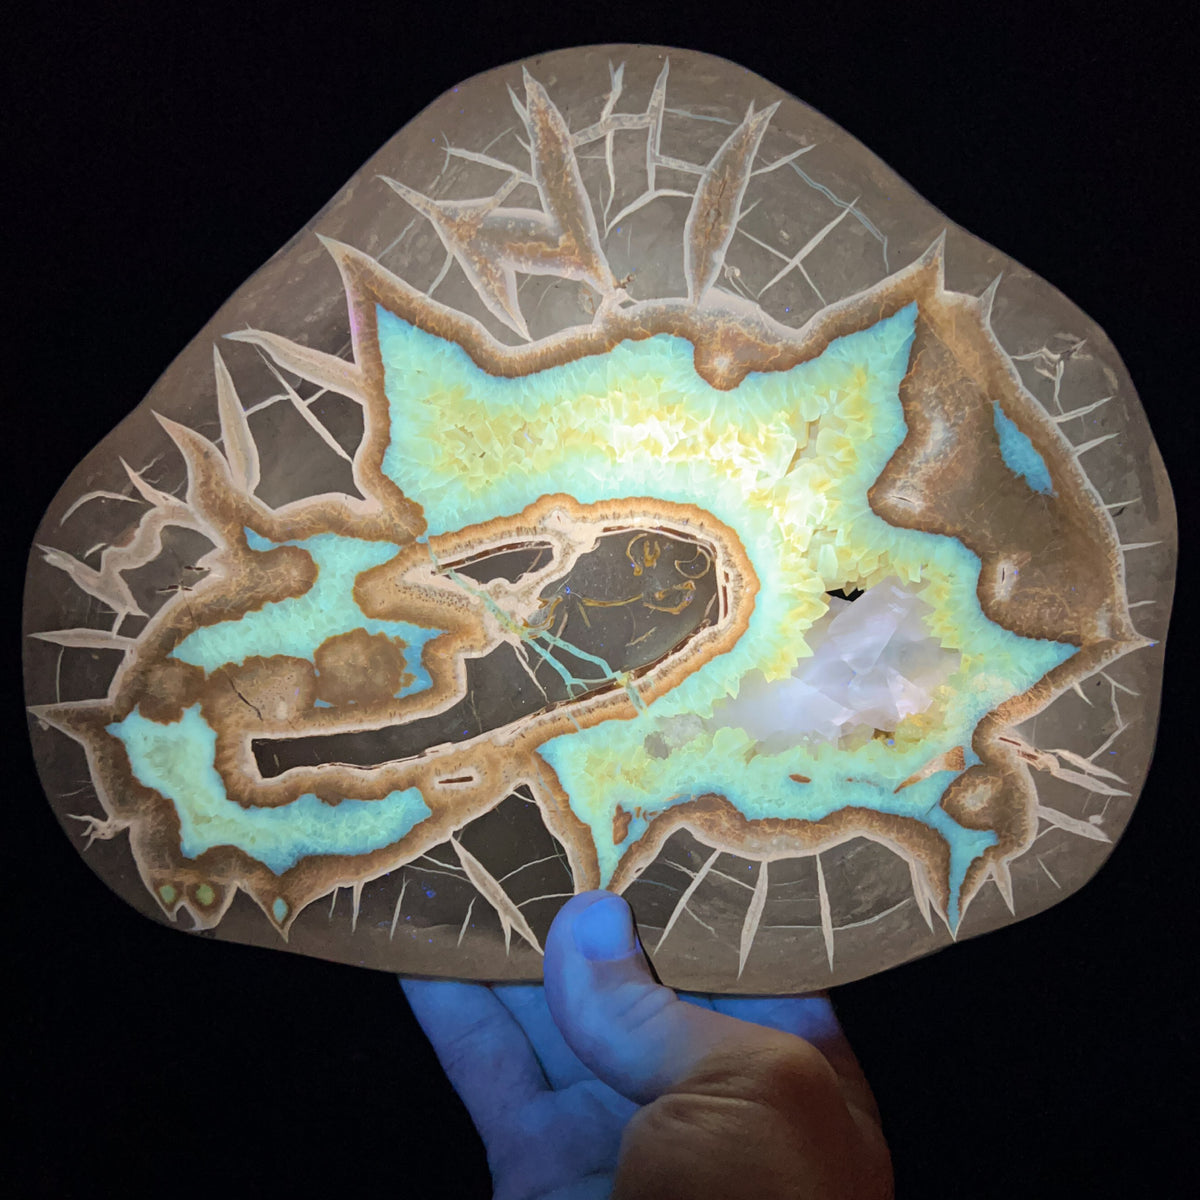 Golden Calcite Concretion Slice Under UV Fluorescent Light